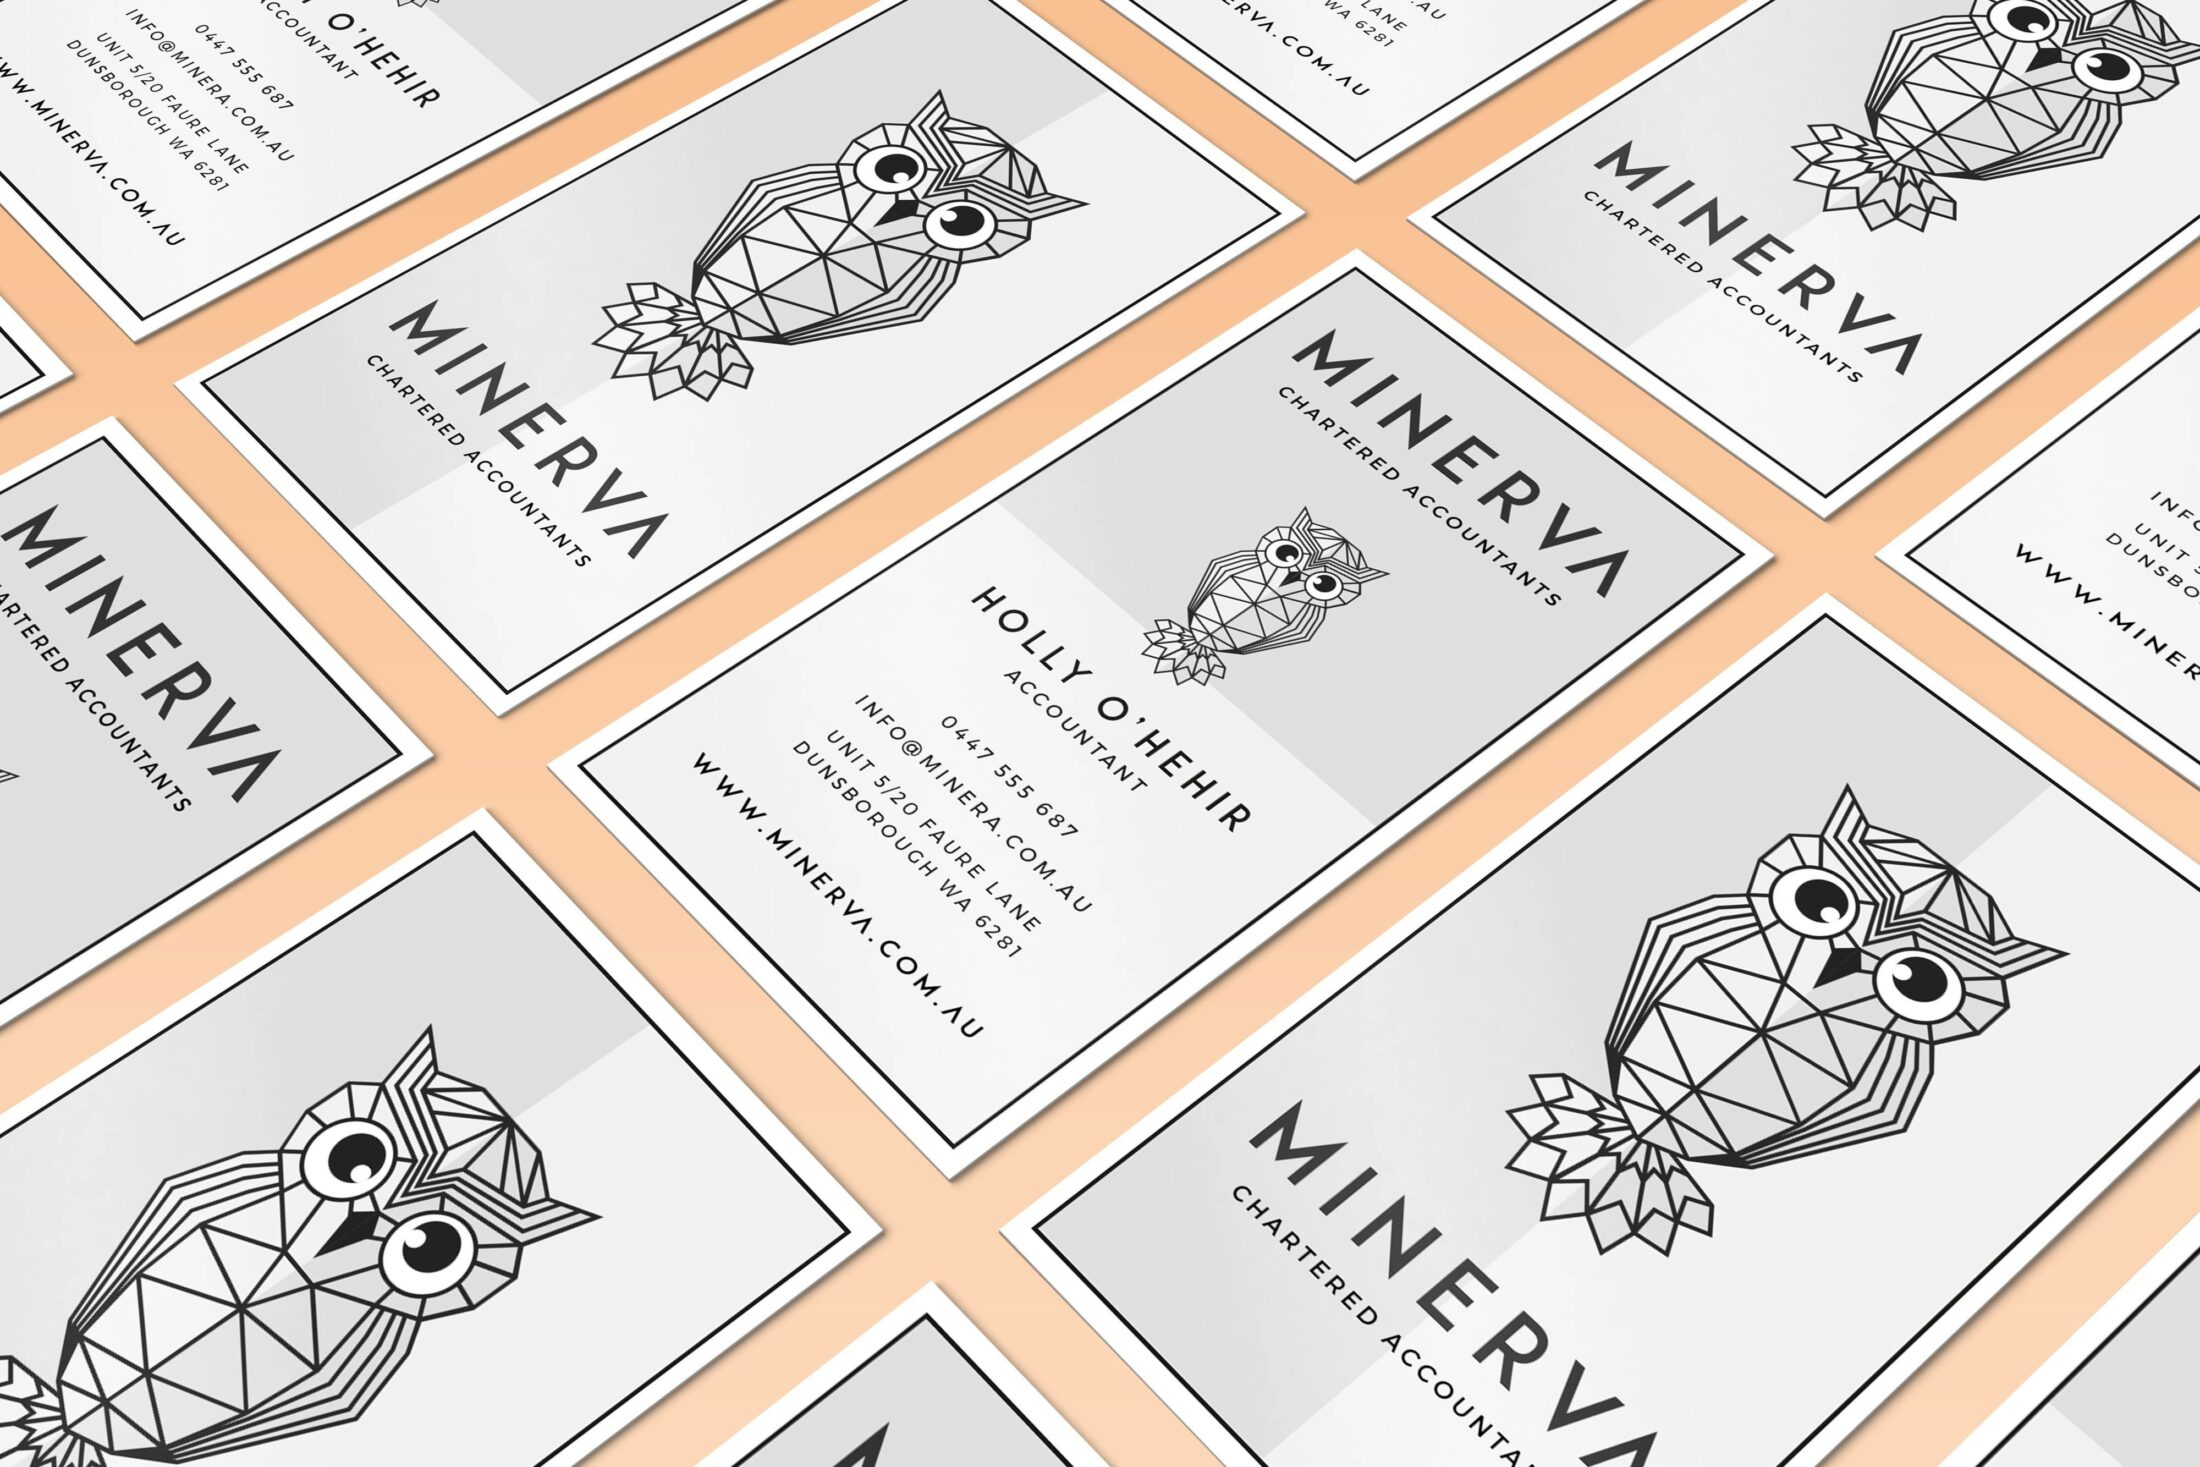 Minerva Accounting | Business cards | Bold Branding & Custom Squarespace Designs | Sofia Parker Creative Studio | www.sofia-parker.com